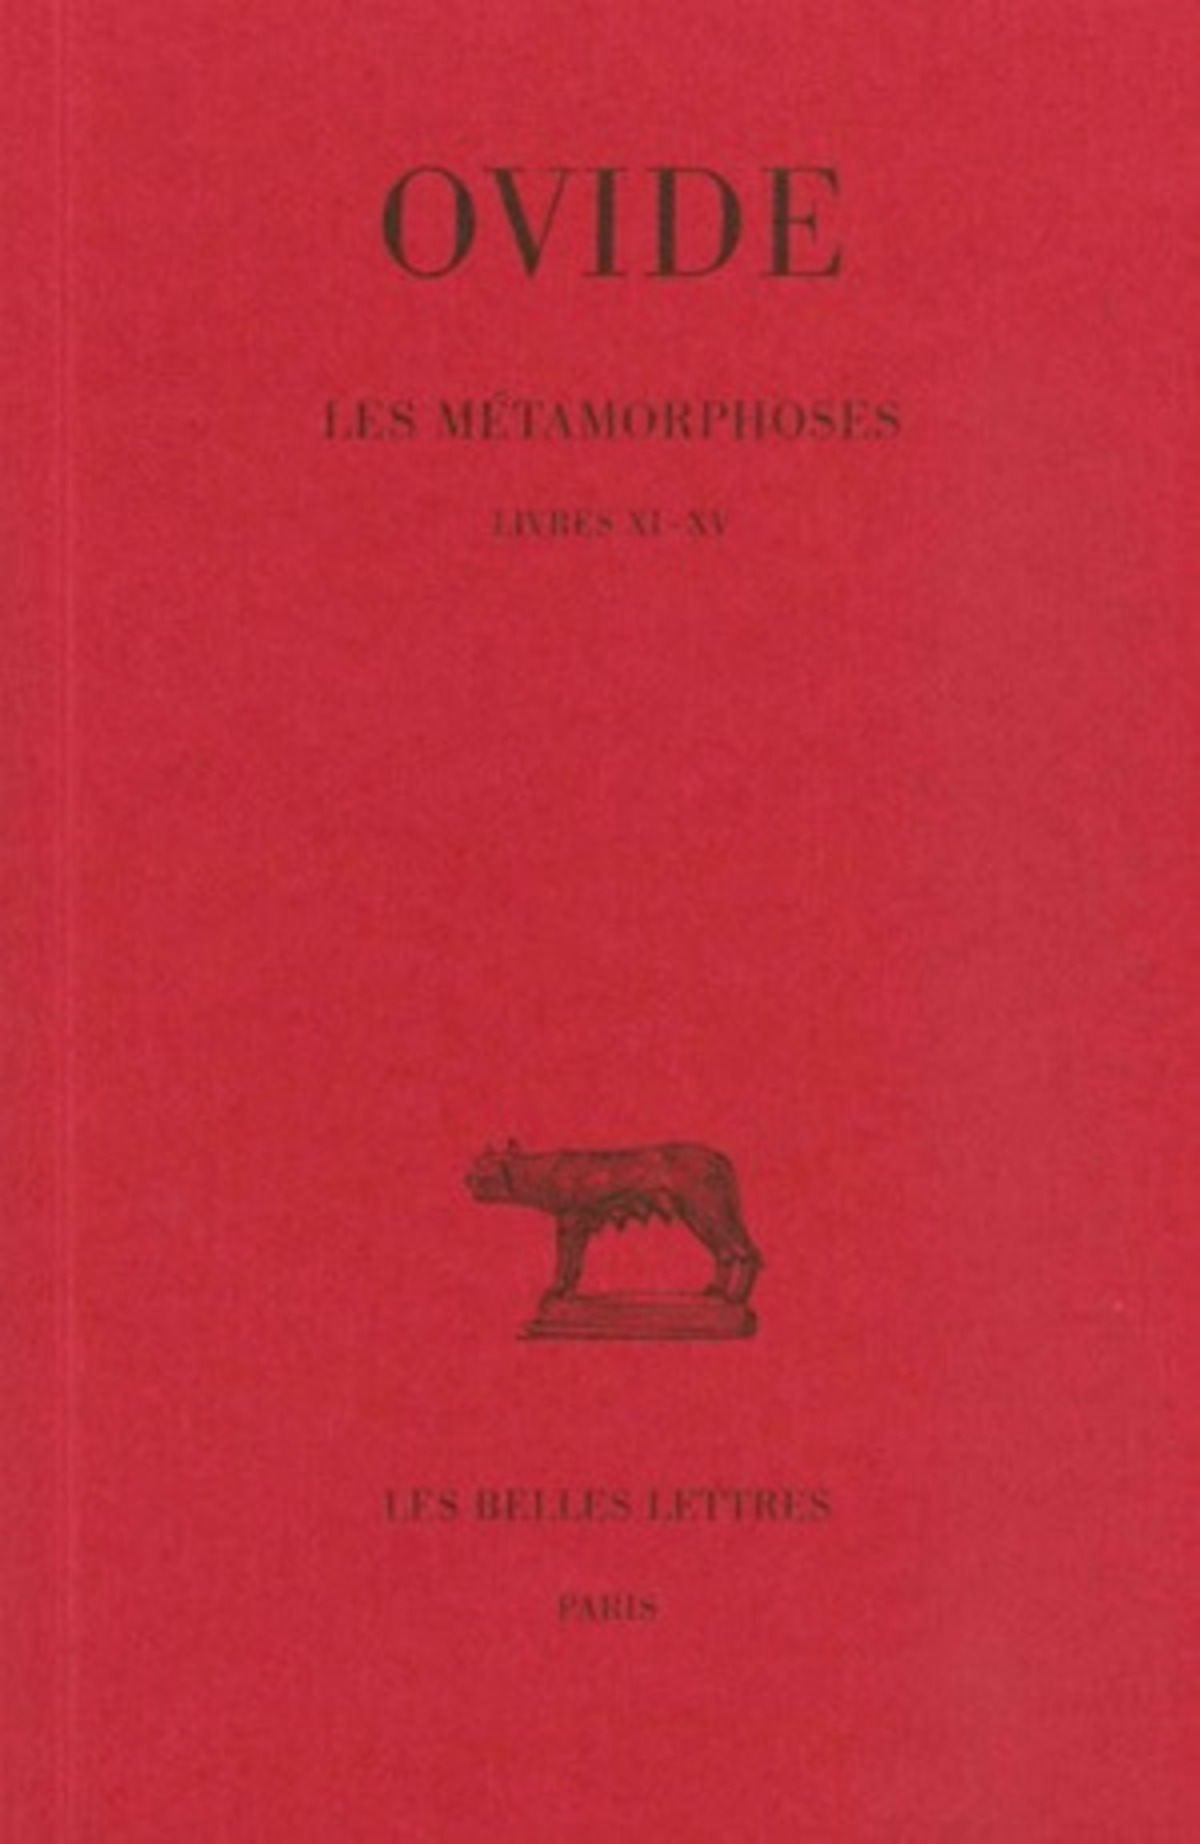 Les Métamorphoses. Tome III : Livres XI-XV